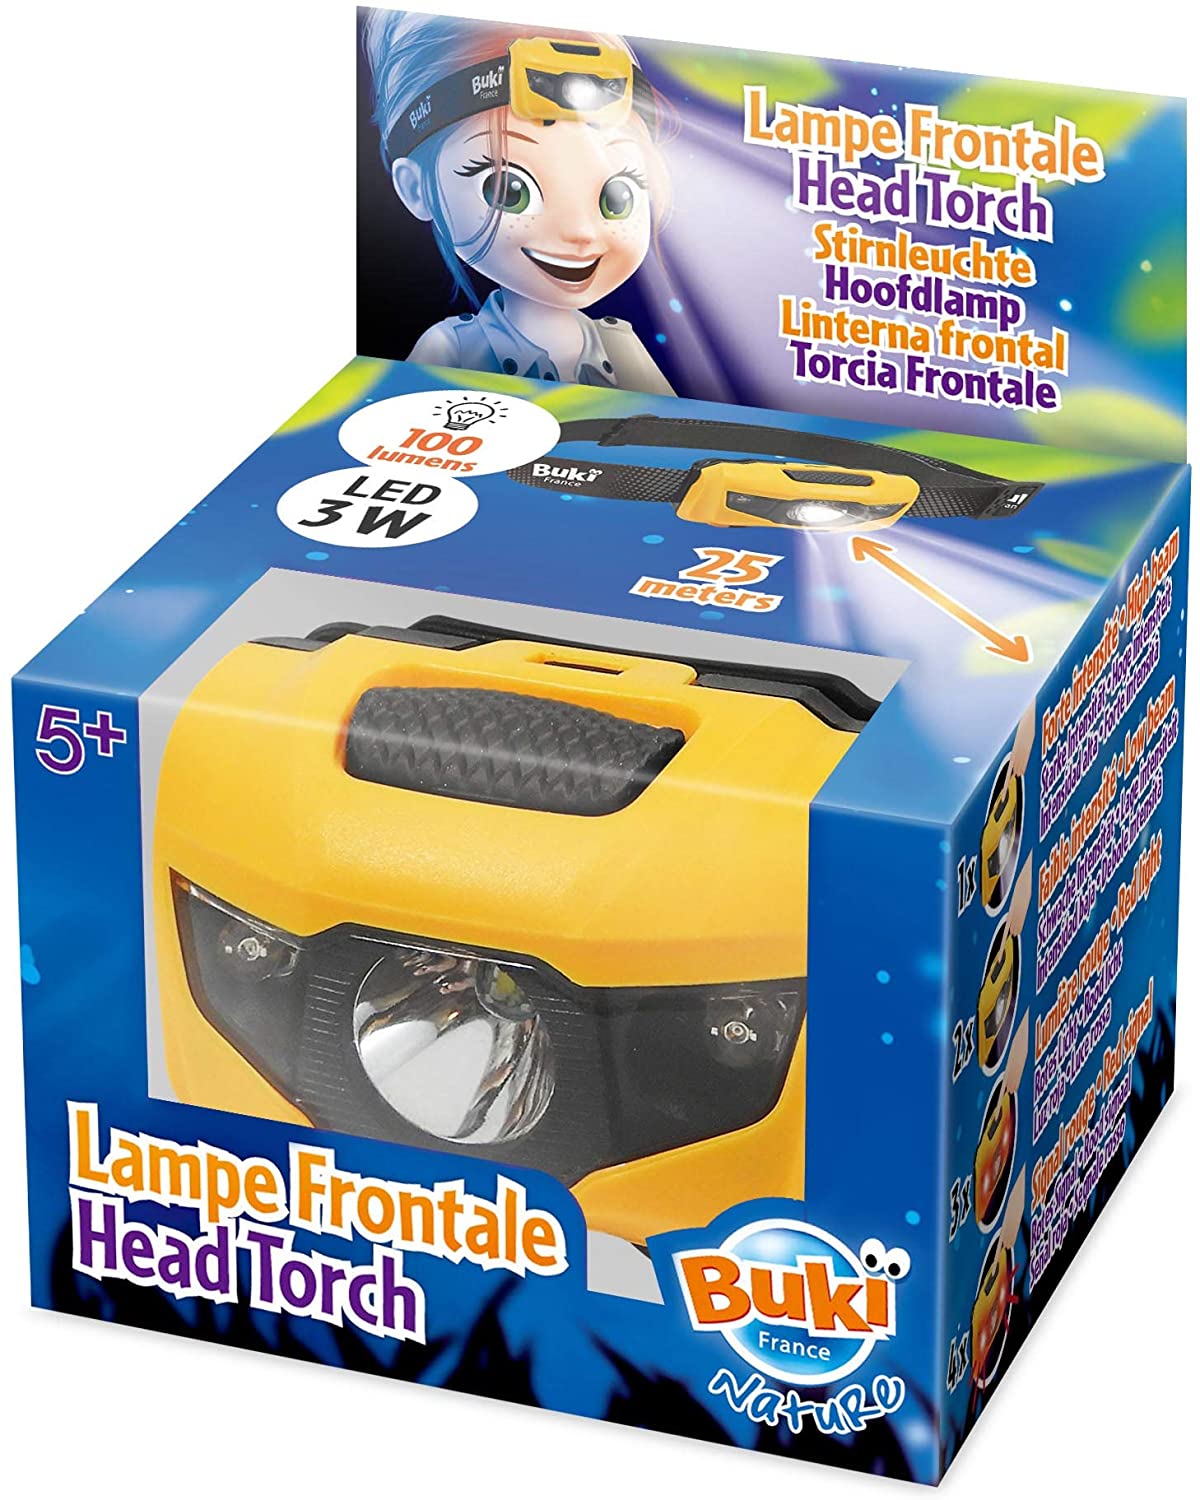 Lampe frontale LED pour enfants, jouets d'extérieur pour garçons et filles,  96,4 g, mode rugissement/muet, bandeau réglable pour le camping, la